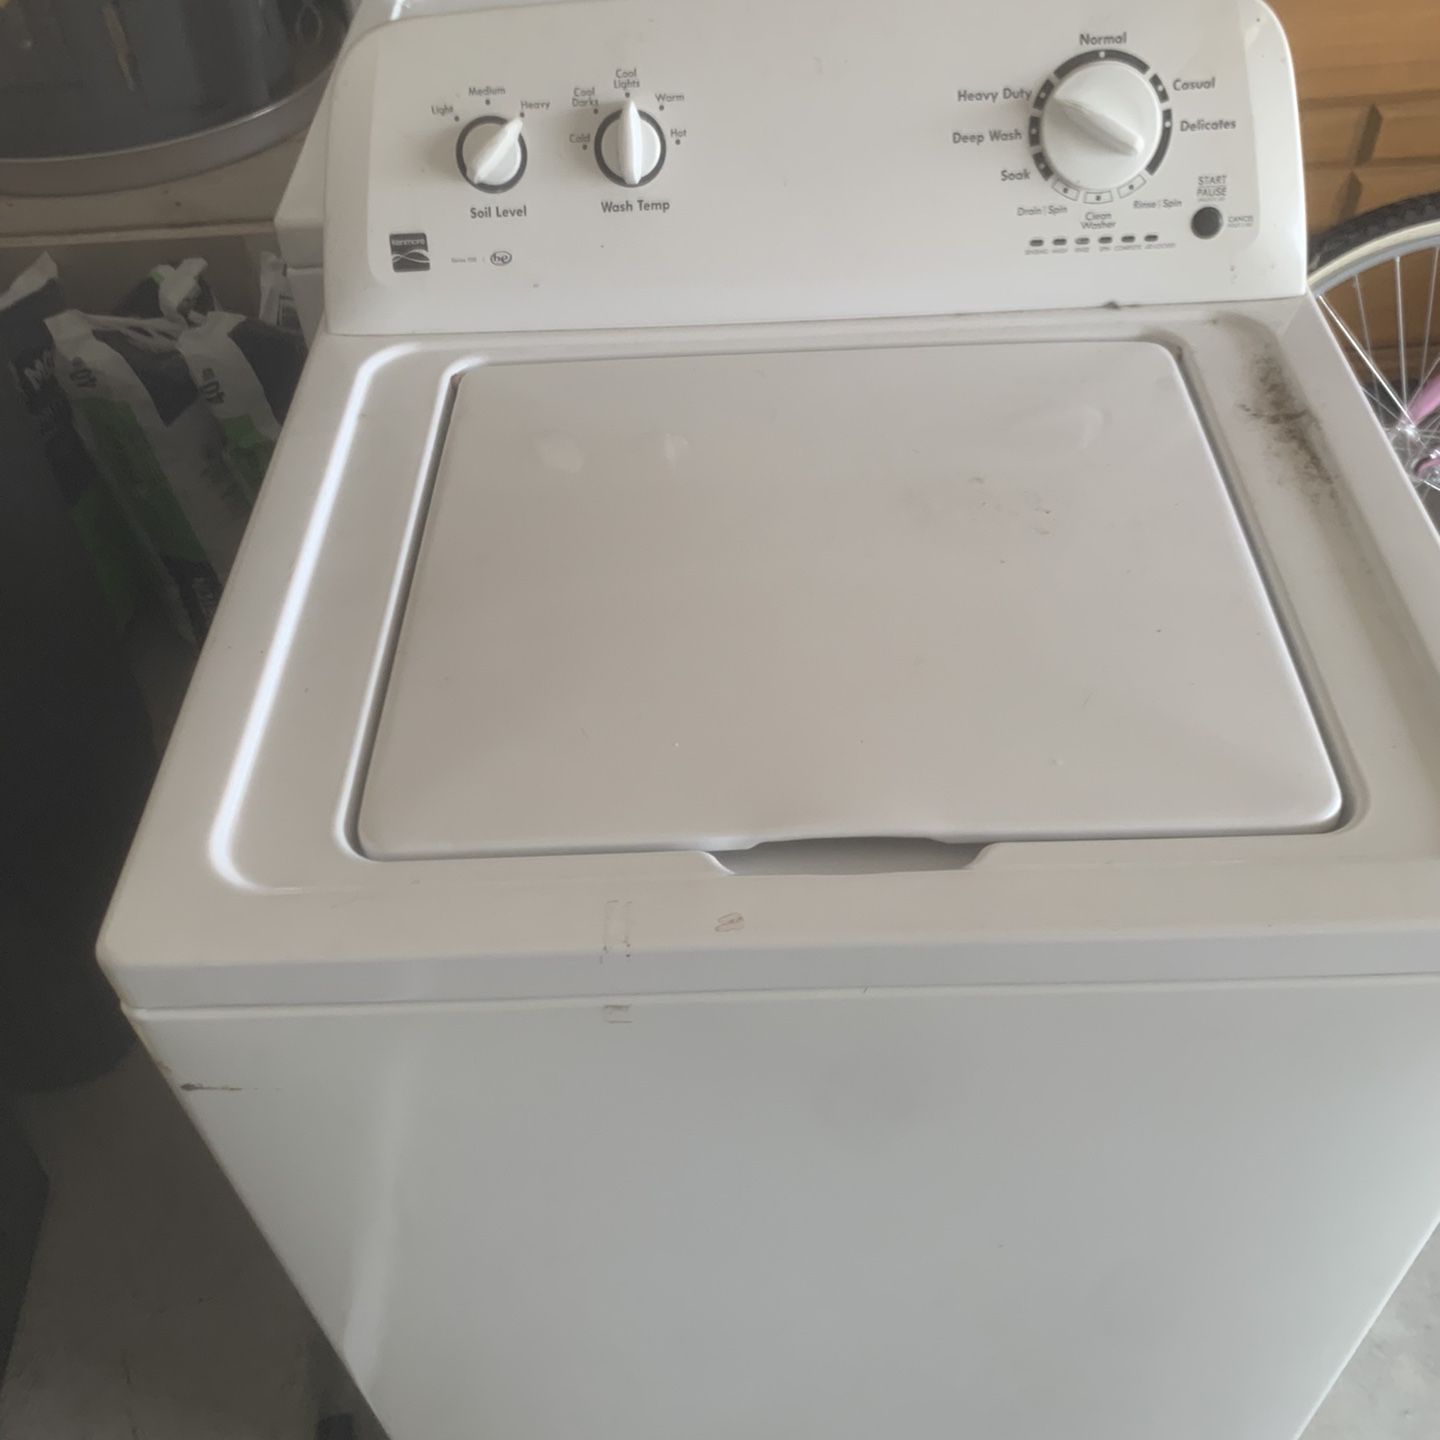 Washer Dryer $275